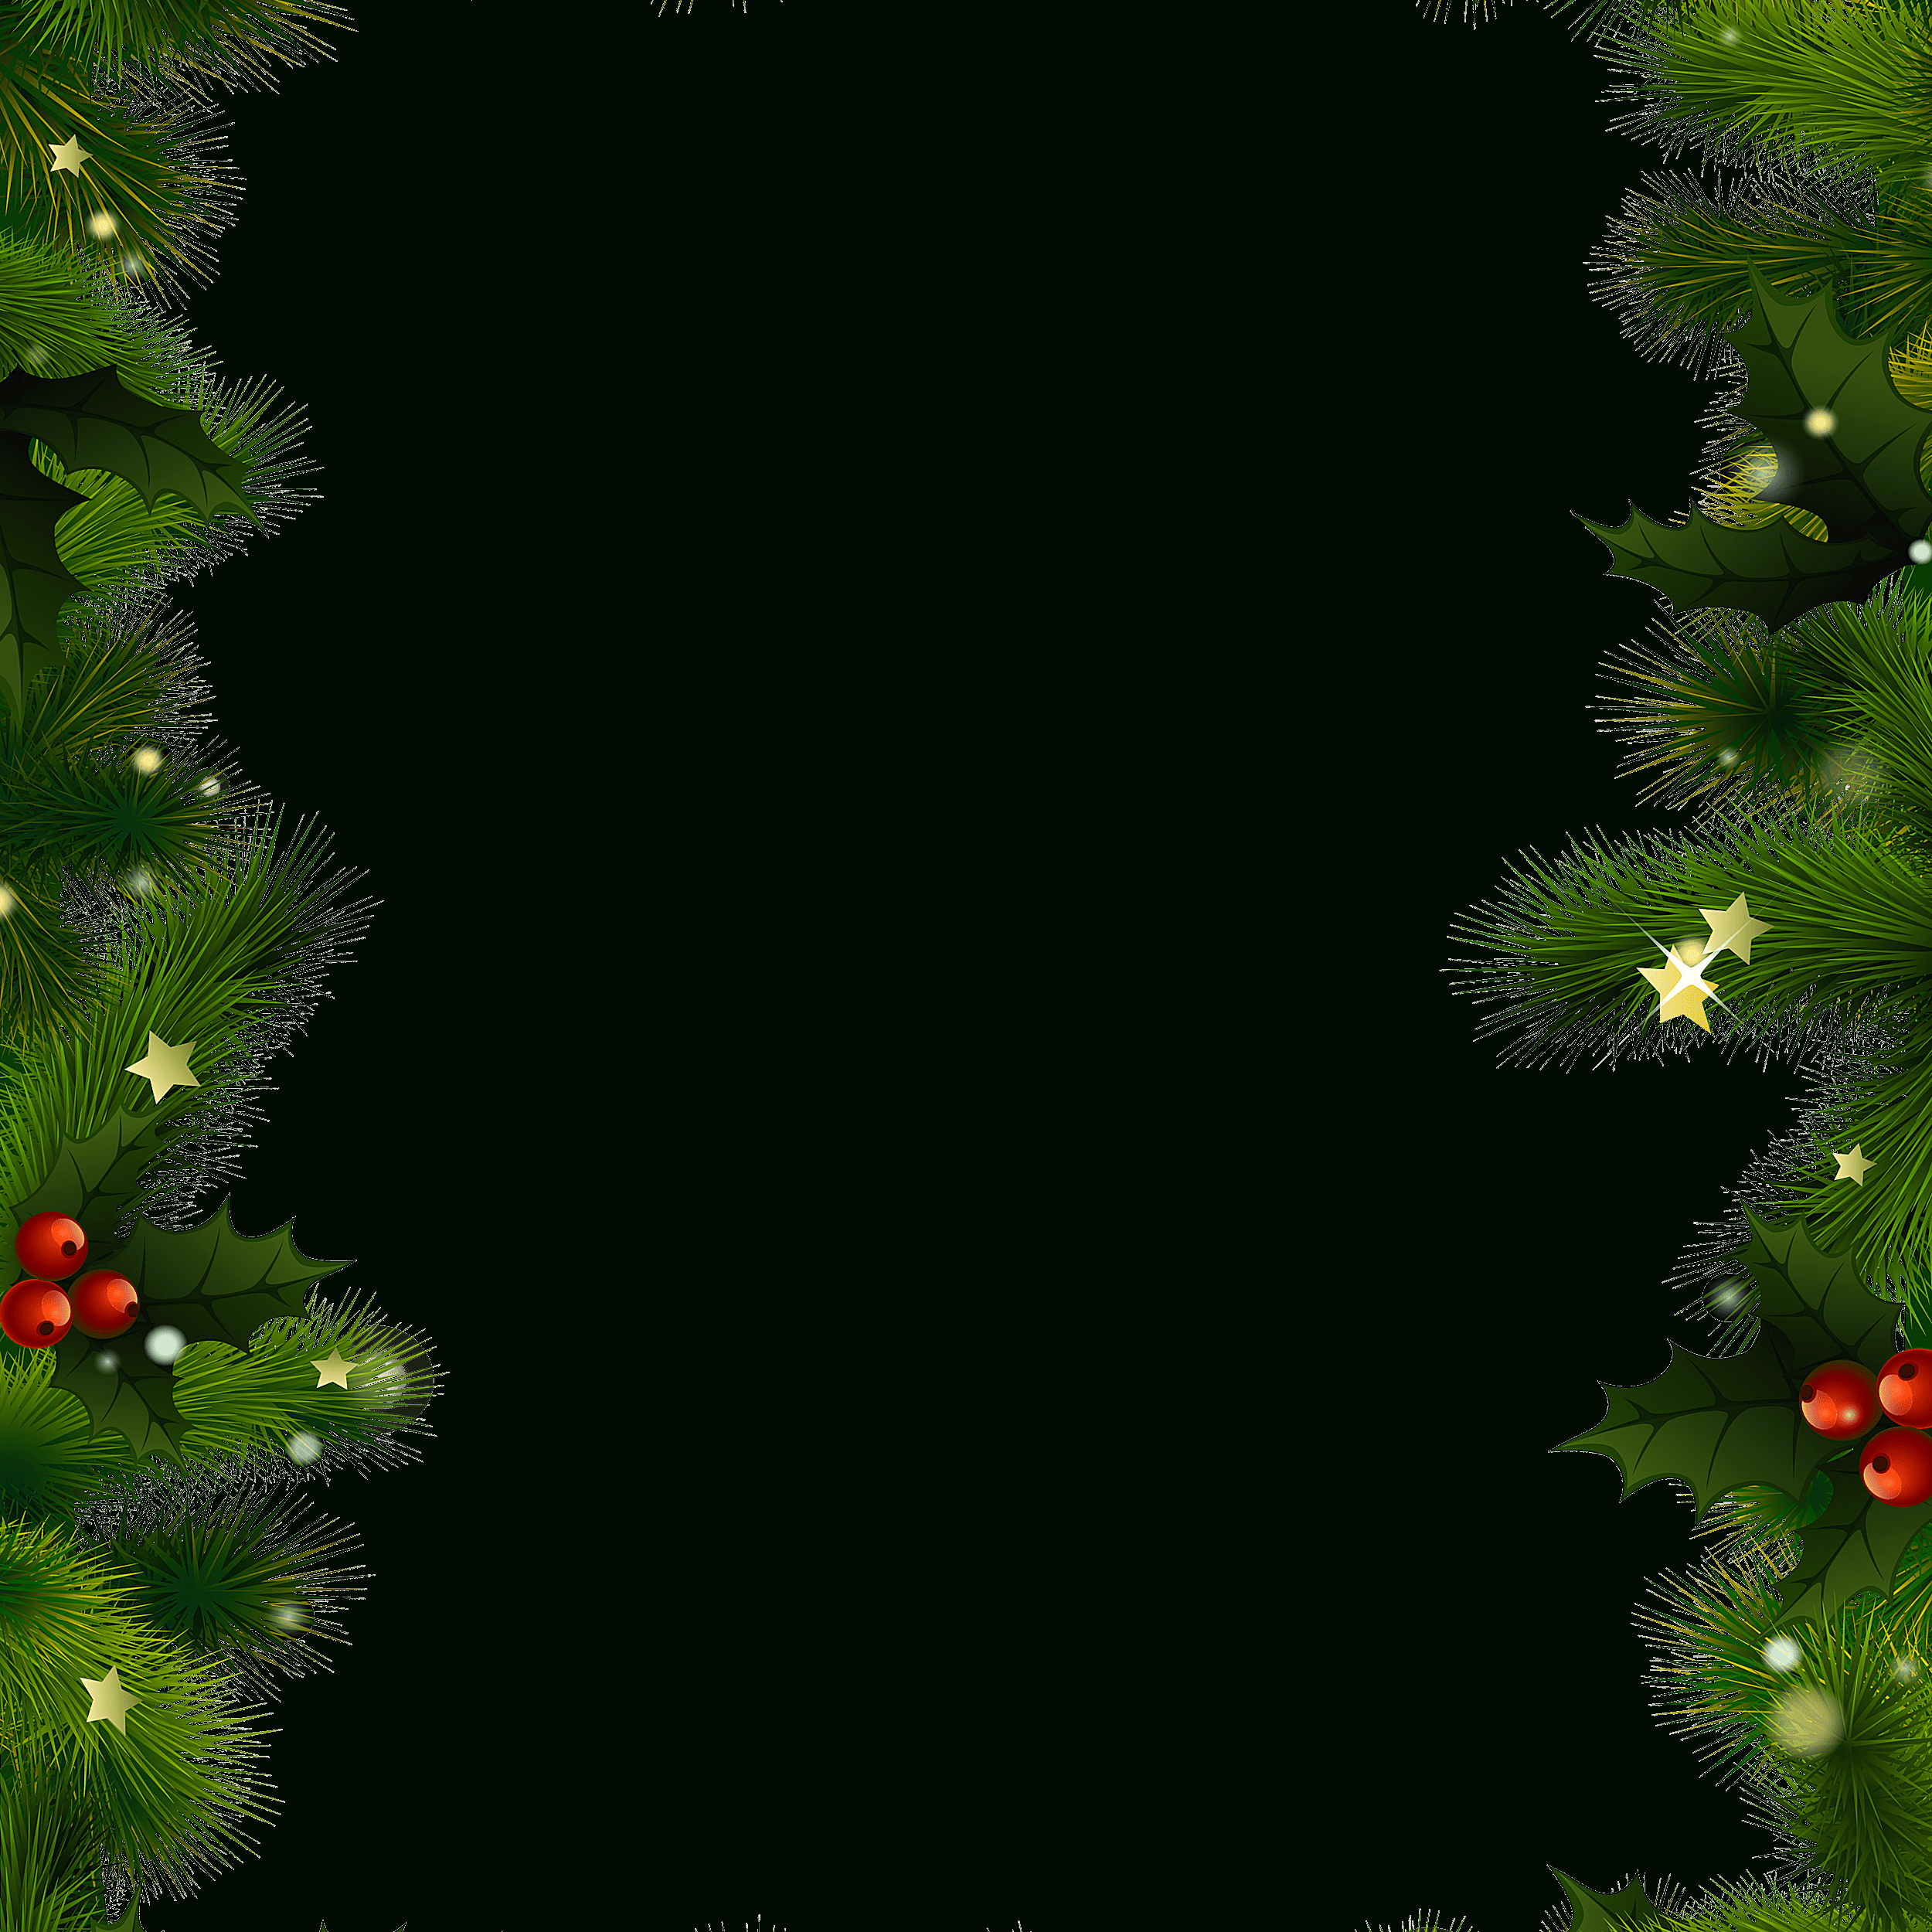 Free Christmas Borders And Frames - Free Printable Christmas Backgrounds